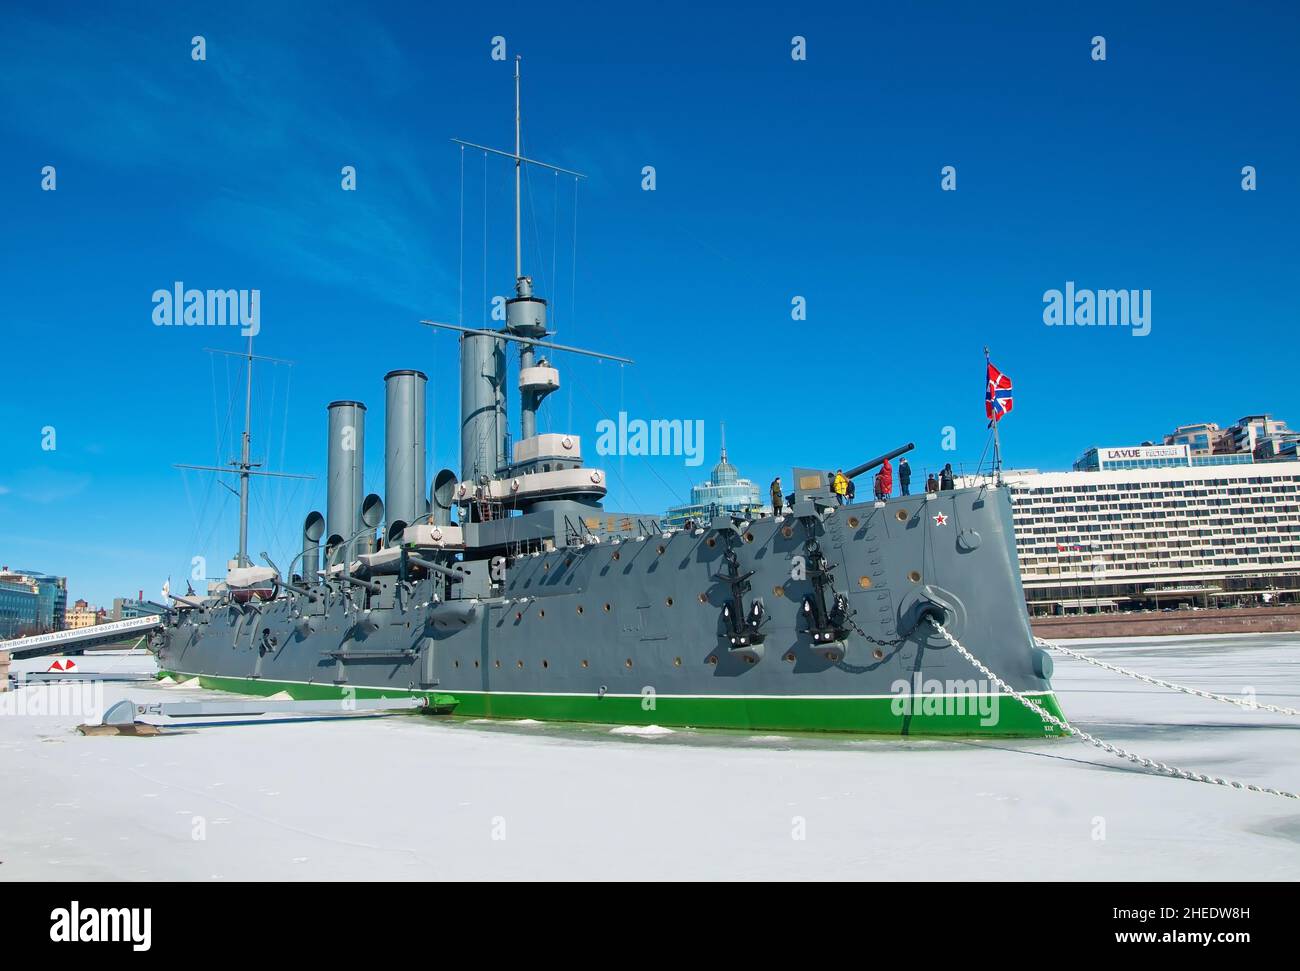 ST.PETERSBOURG, RUSSIE - 27 mars 2021 : croiseur Aurora, symbole de la révolution d'octobre Banque D'Images